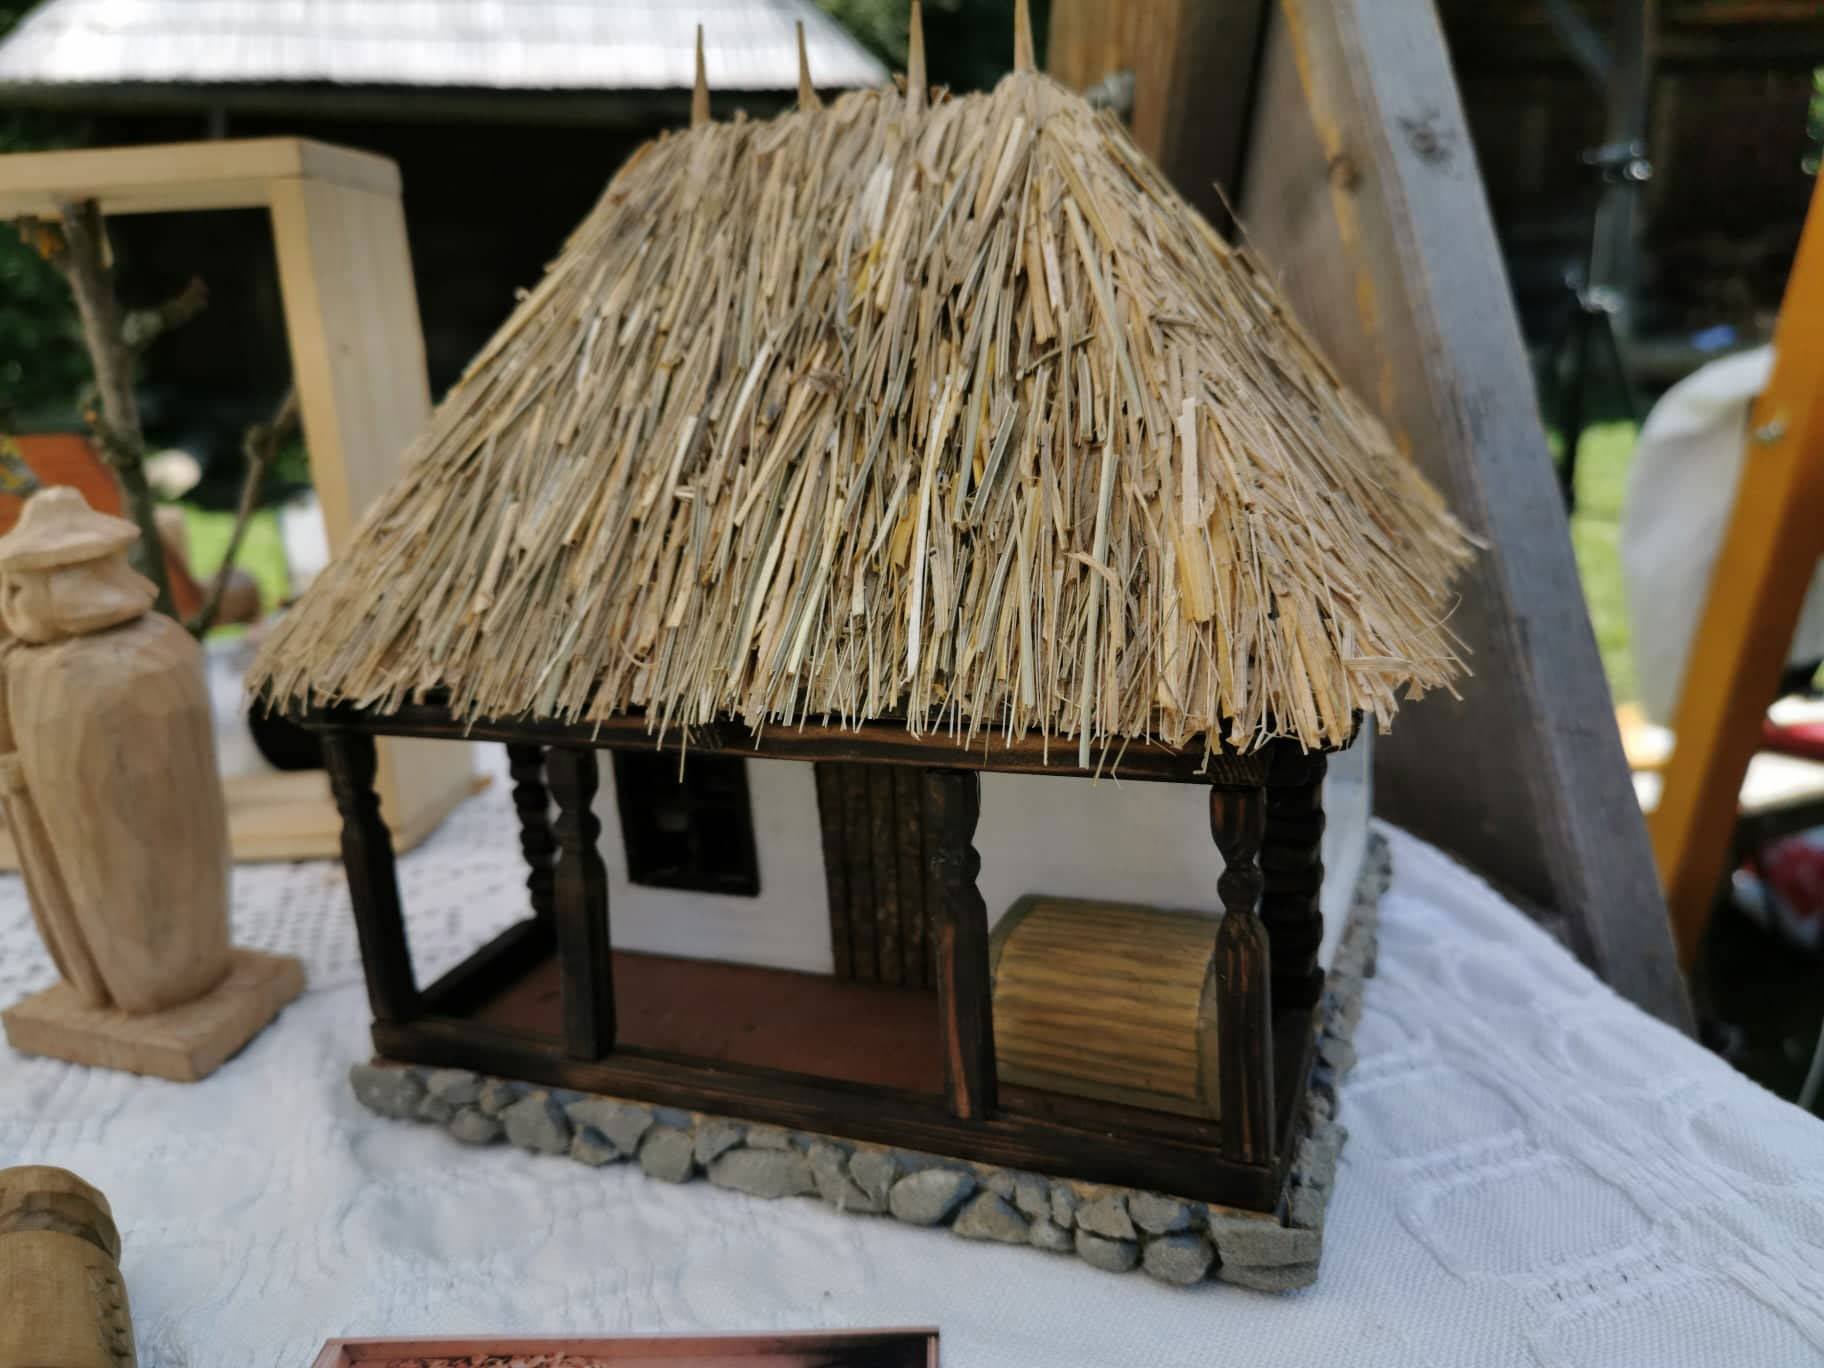 Casa traditionala in miniatura - casa oloierului din judetul Hunedoara